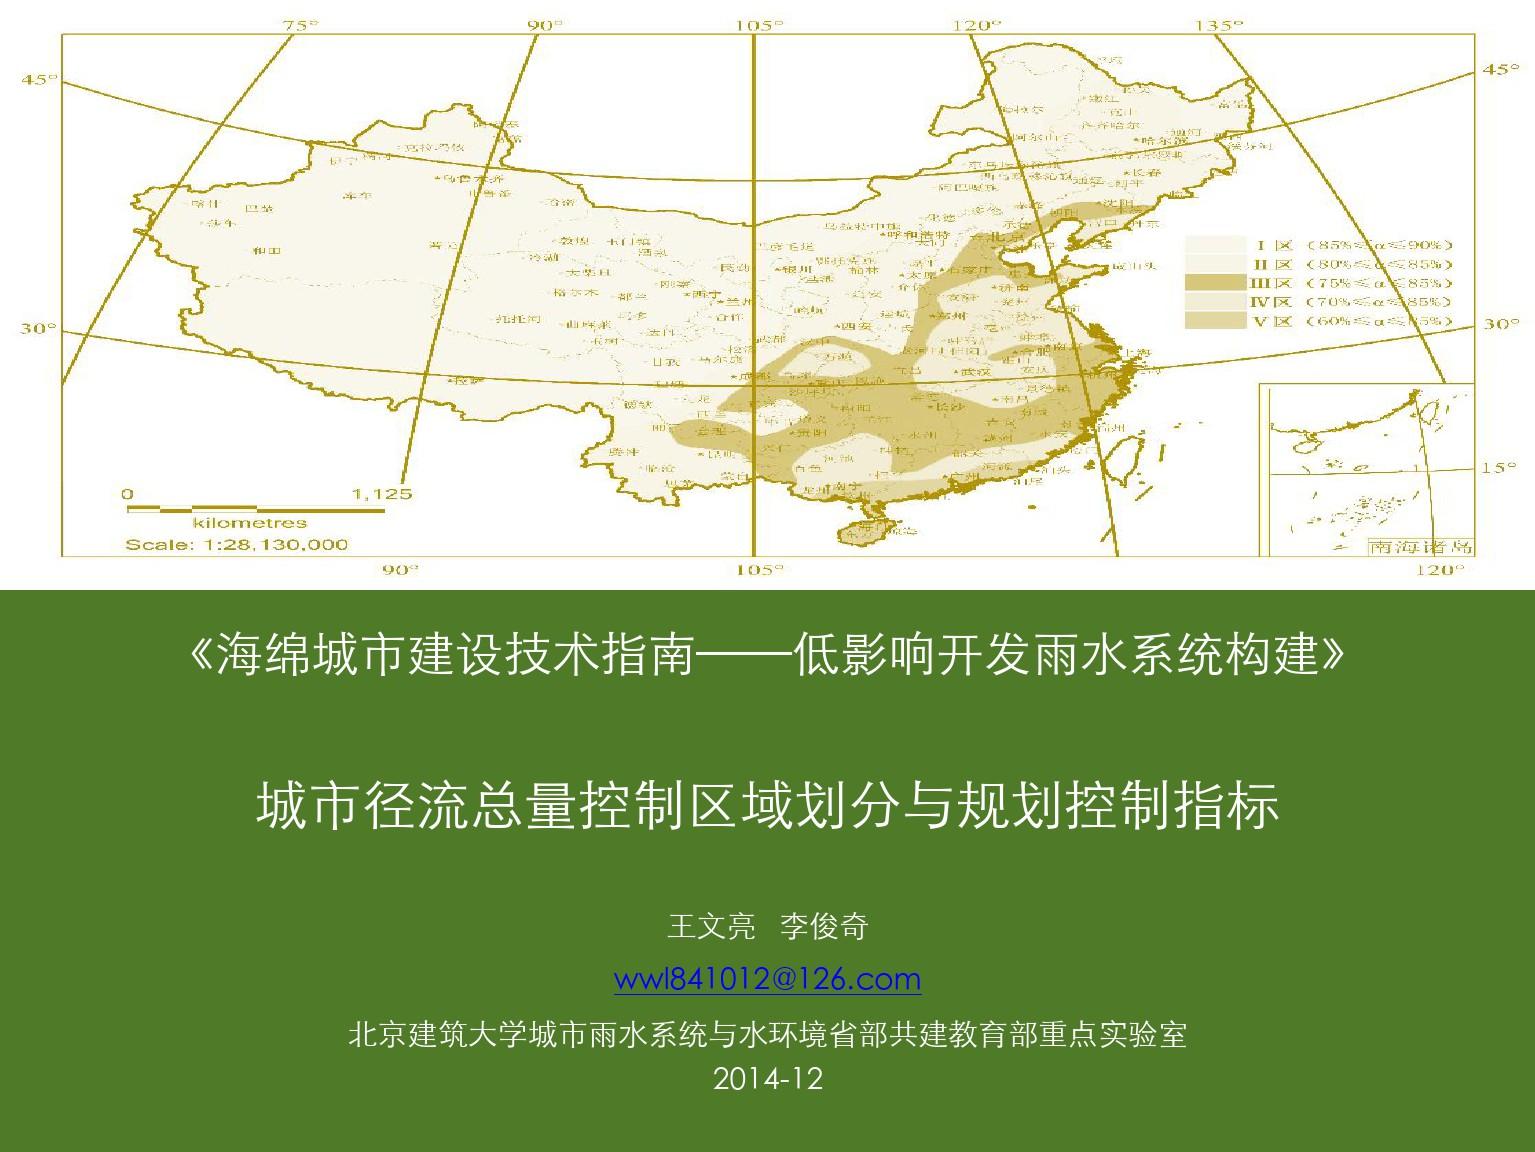 《海绵城市建设技术指南——低影响开发雨水系统构建》城市径流总量控制目标与规划指标-北京建筑大学-王文亮